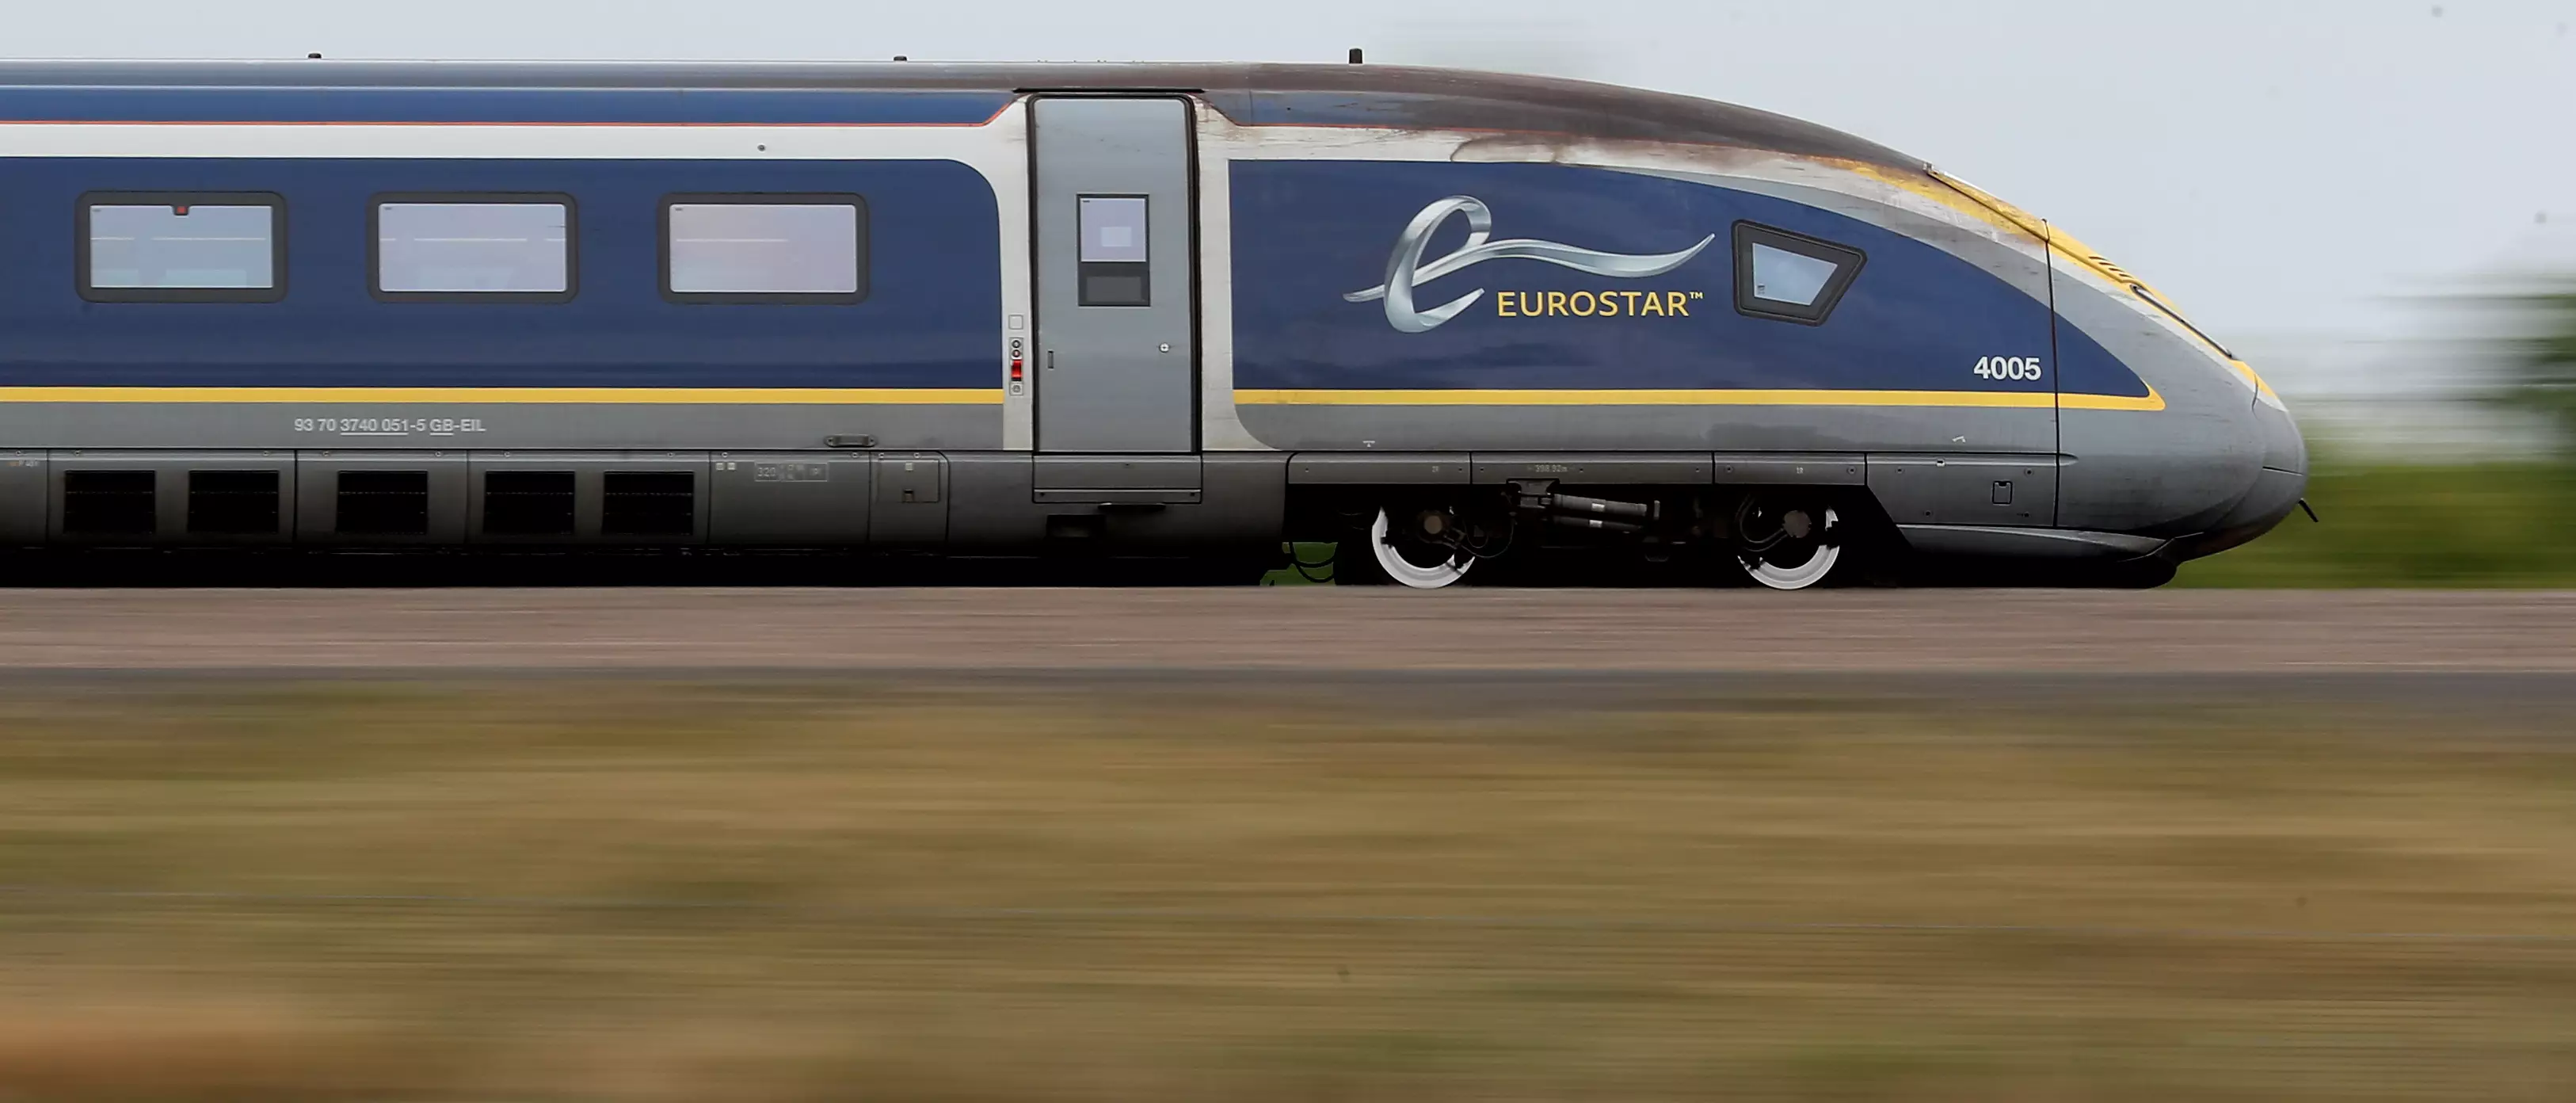 A Eurostar e320 train, the latest train the Eurostar fleet.